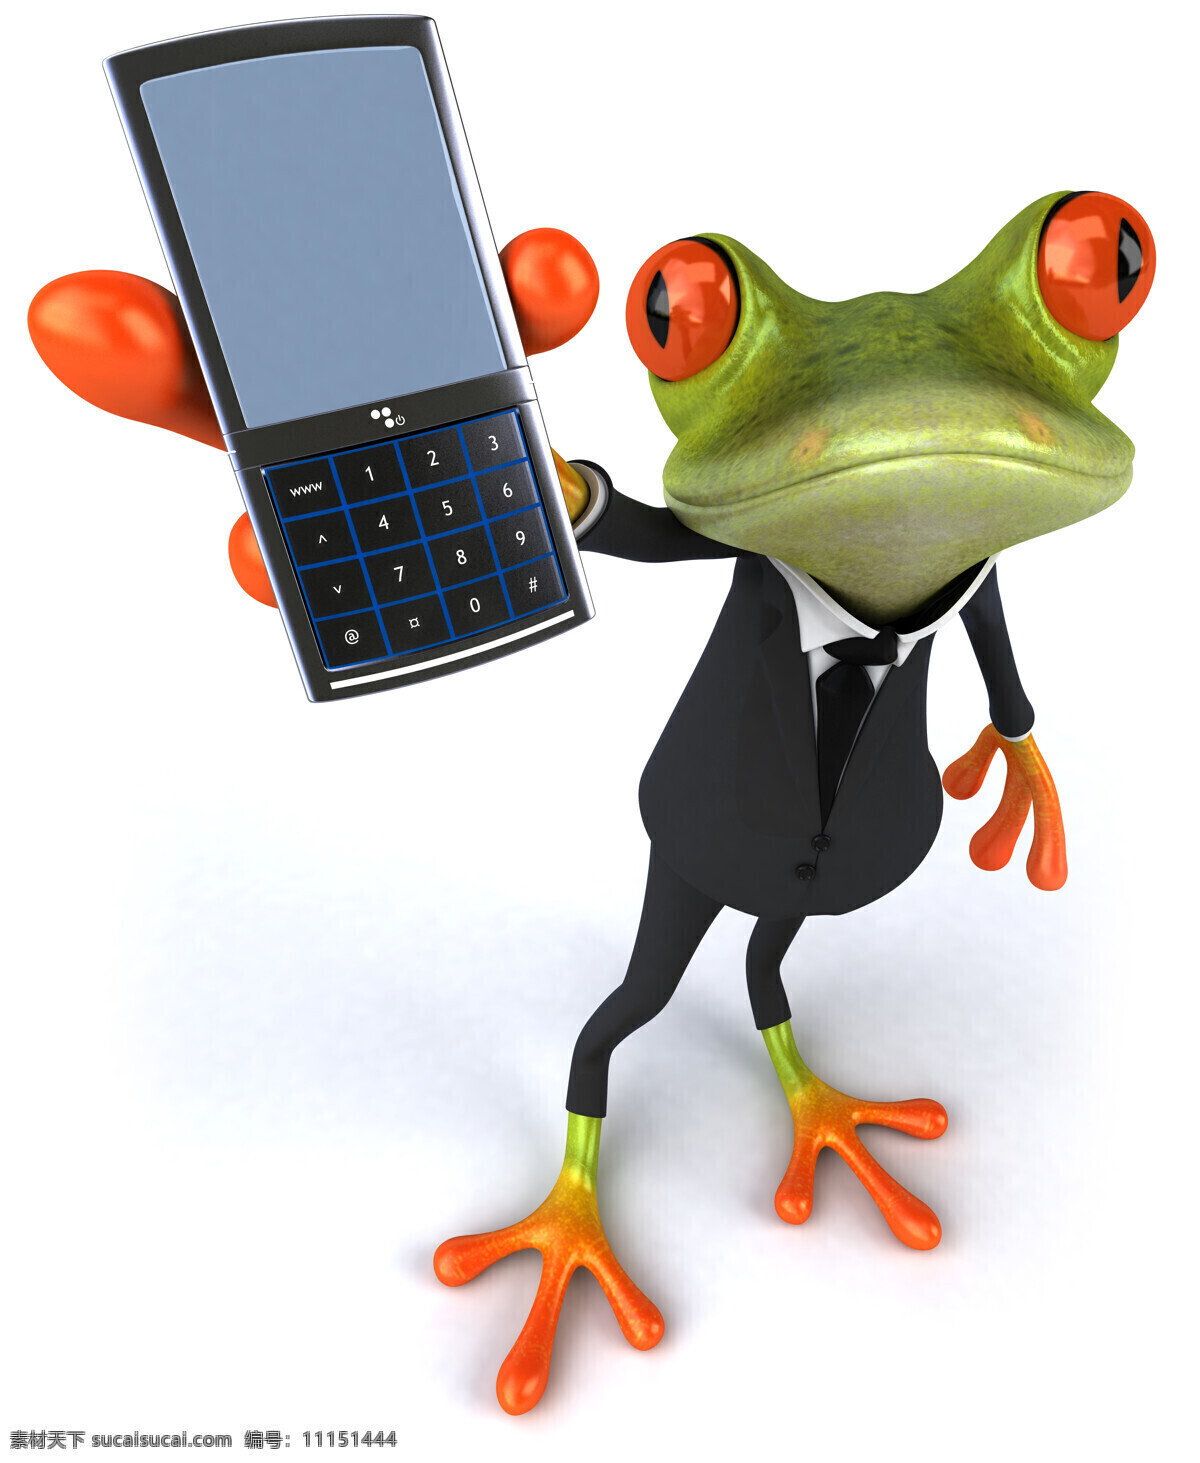 手机 3d 卡通 青蛙 卡通青蛙 可爱小青蛙 3d绿色青蛙 动物绘画图片 创意 动物绘画 动物图片 生物世界 插画图片 卡通动物